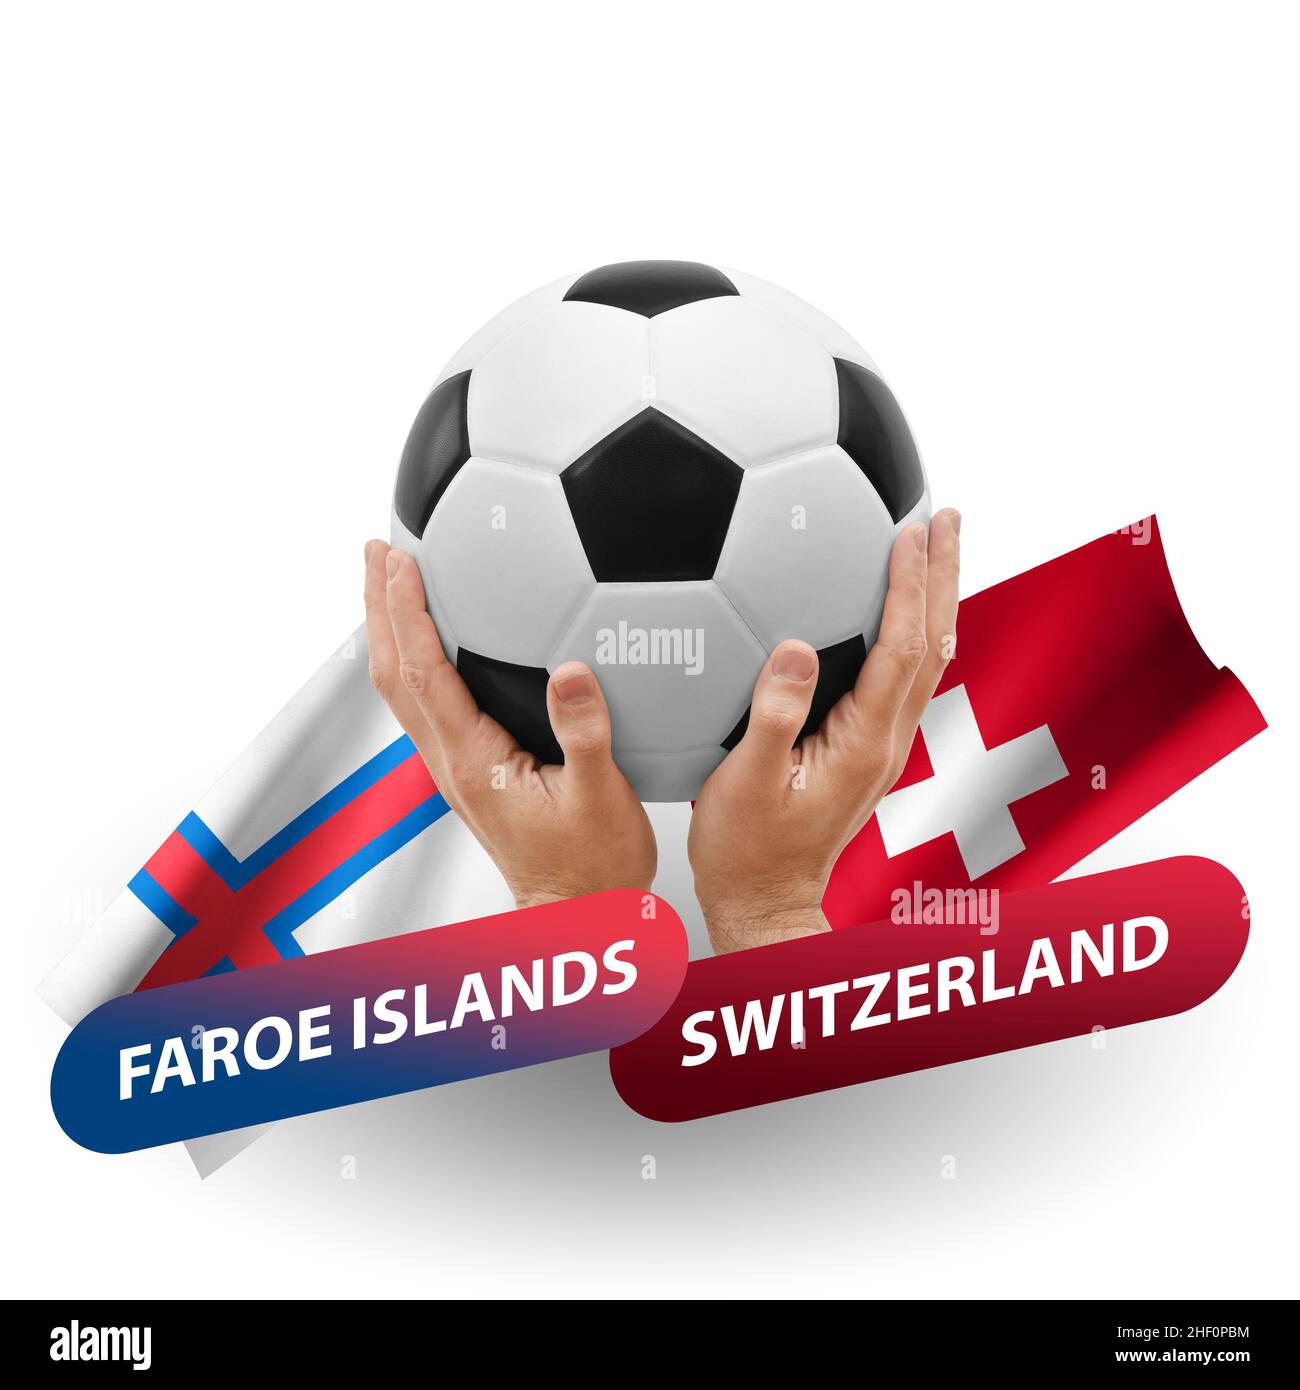 Fußballspiel, Nationalmannschaften färöer-Inseln gegen schweiz  Stockfotografie - Alamy